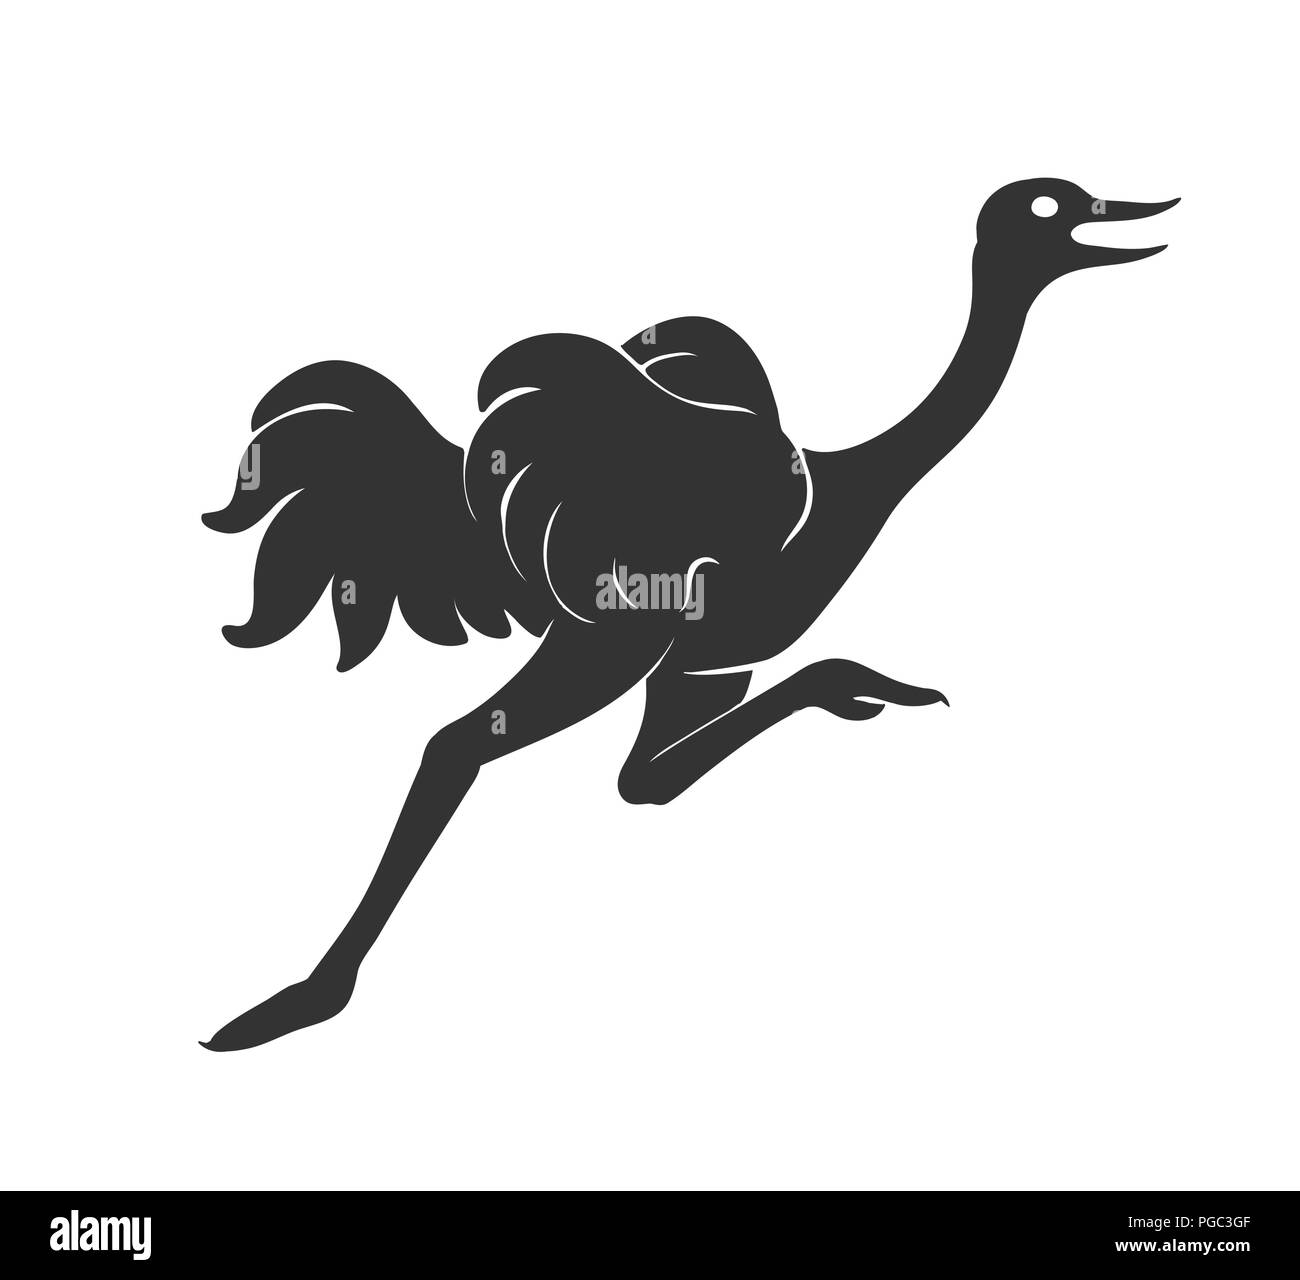 L'exécution d'Autruche vector illustration croquis de bird silhouette en noir isolated on white Illustration de Vecteur